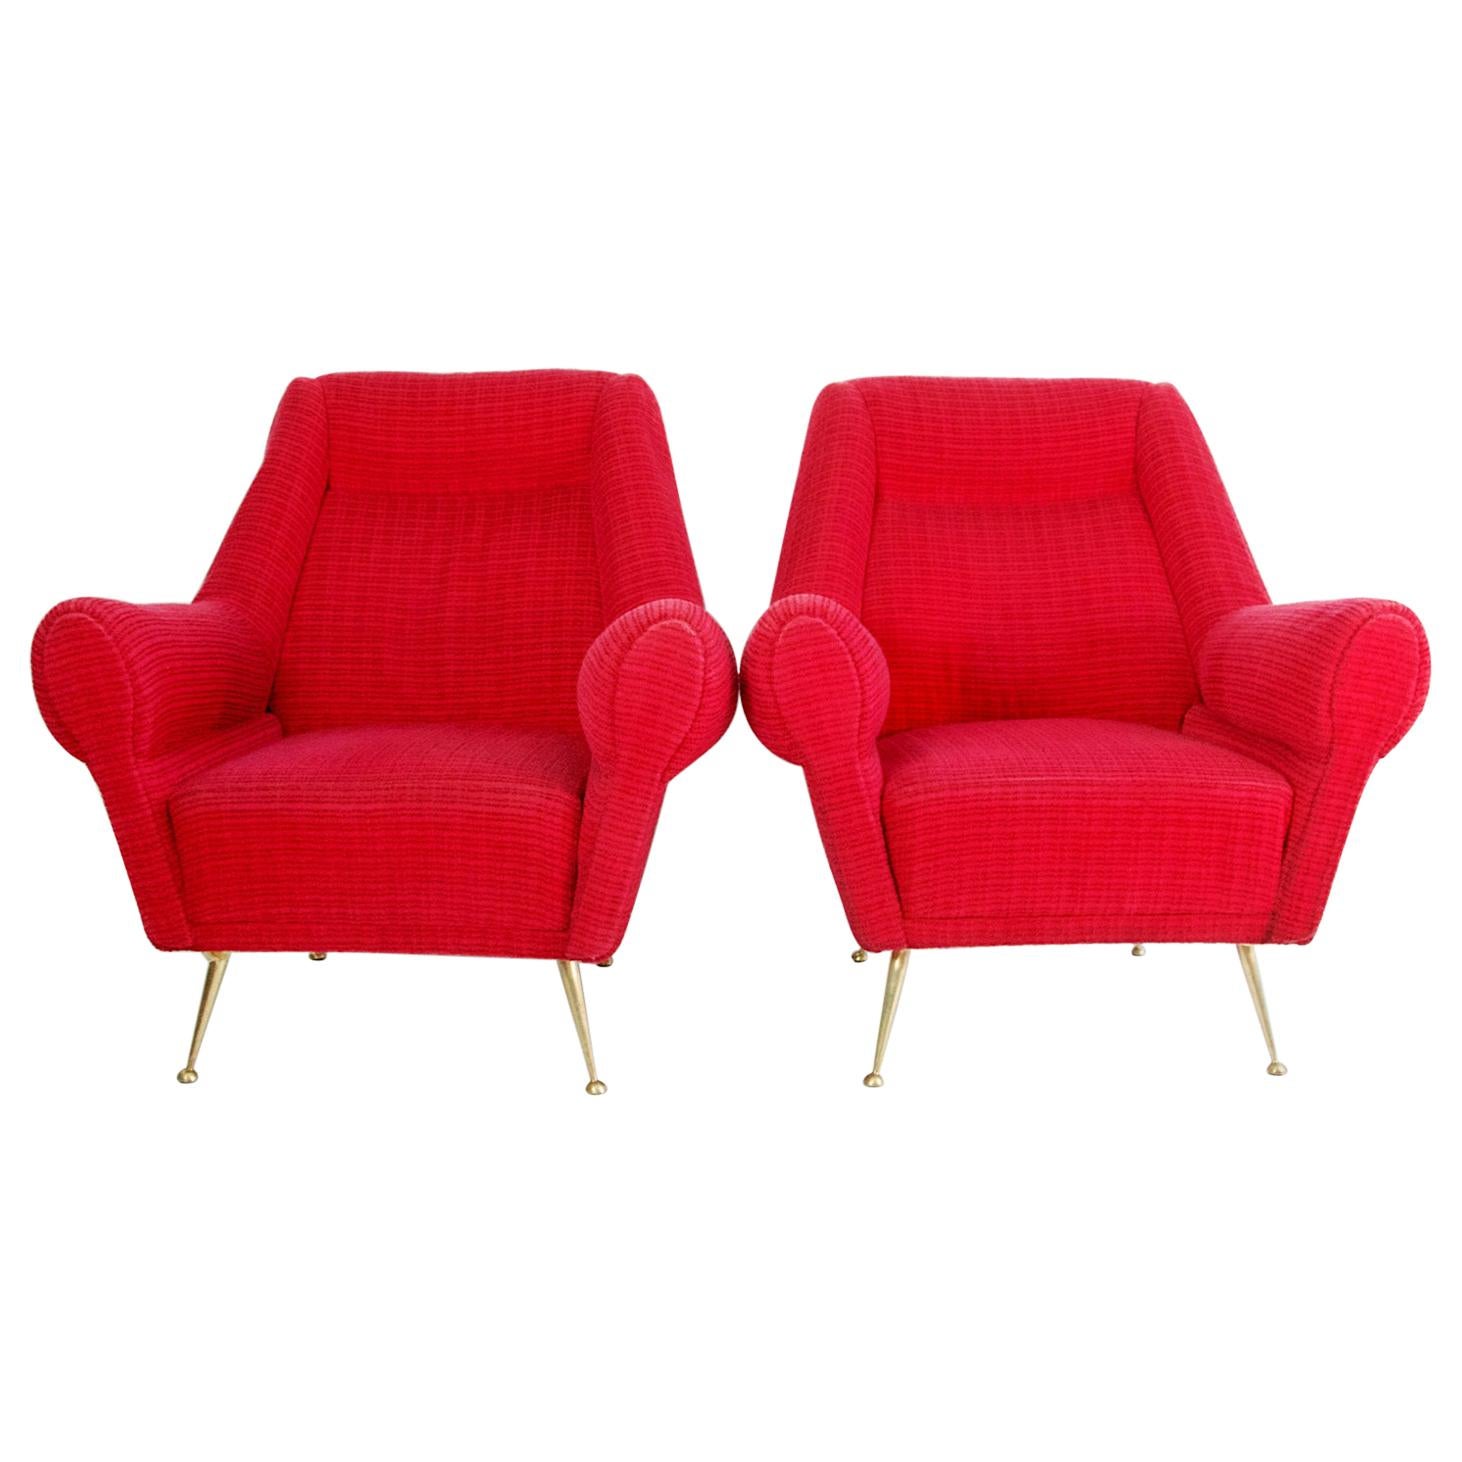 Ein Paar italienische Sessel, entworfen von Gigi Radice für Minotti, hergestellt um 1950 mit Originalstoff. Die Beine sind aus massivem Messing.